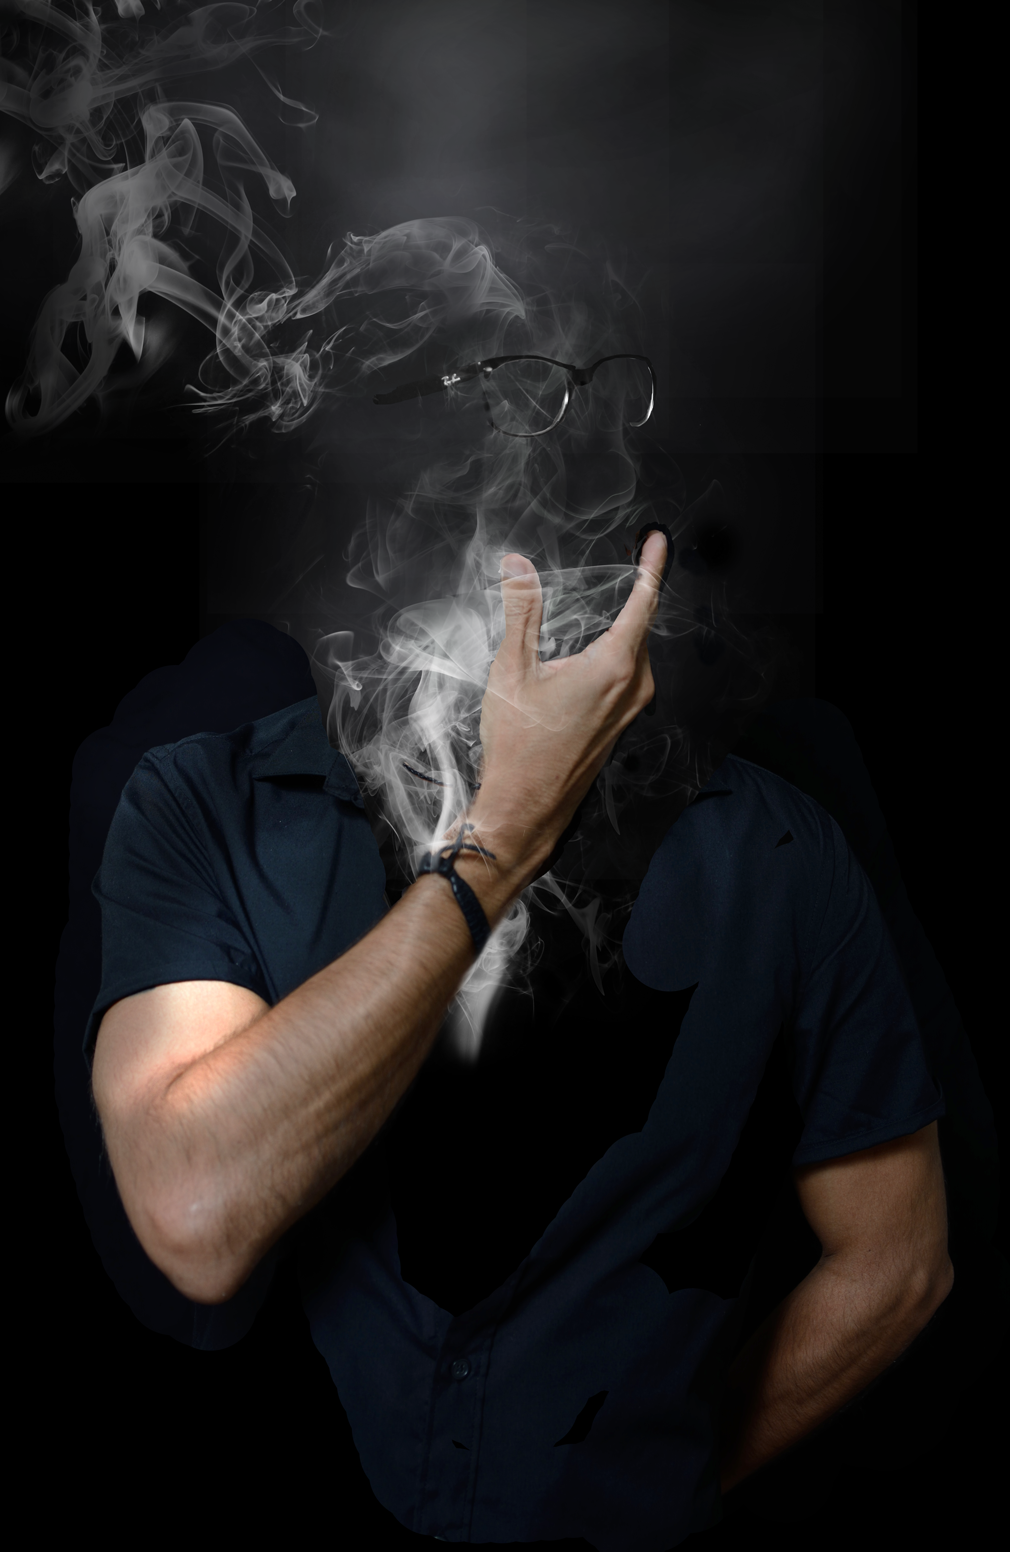 Аватарка для телеграмма мужская. Мужчина в дыму. Лицо в дыму. Мужской портрет с дымом. Мужское лицо в дыму.